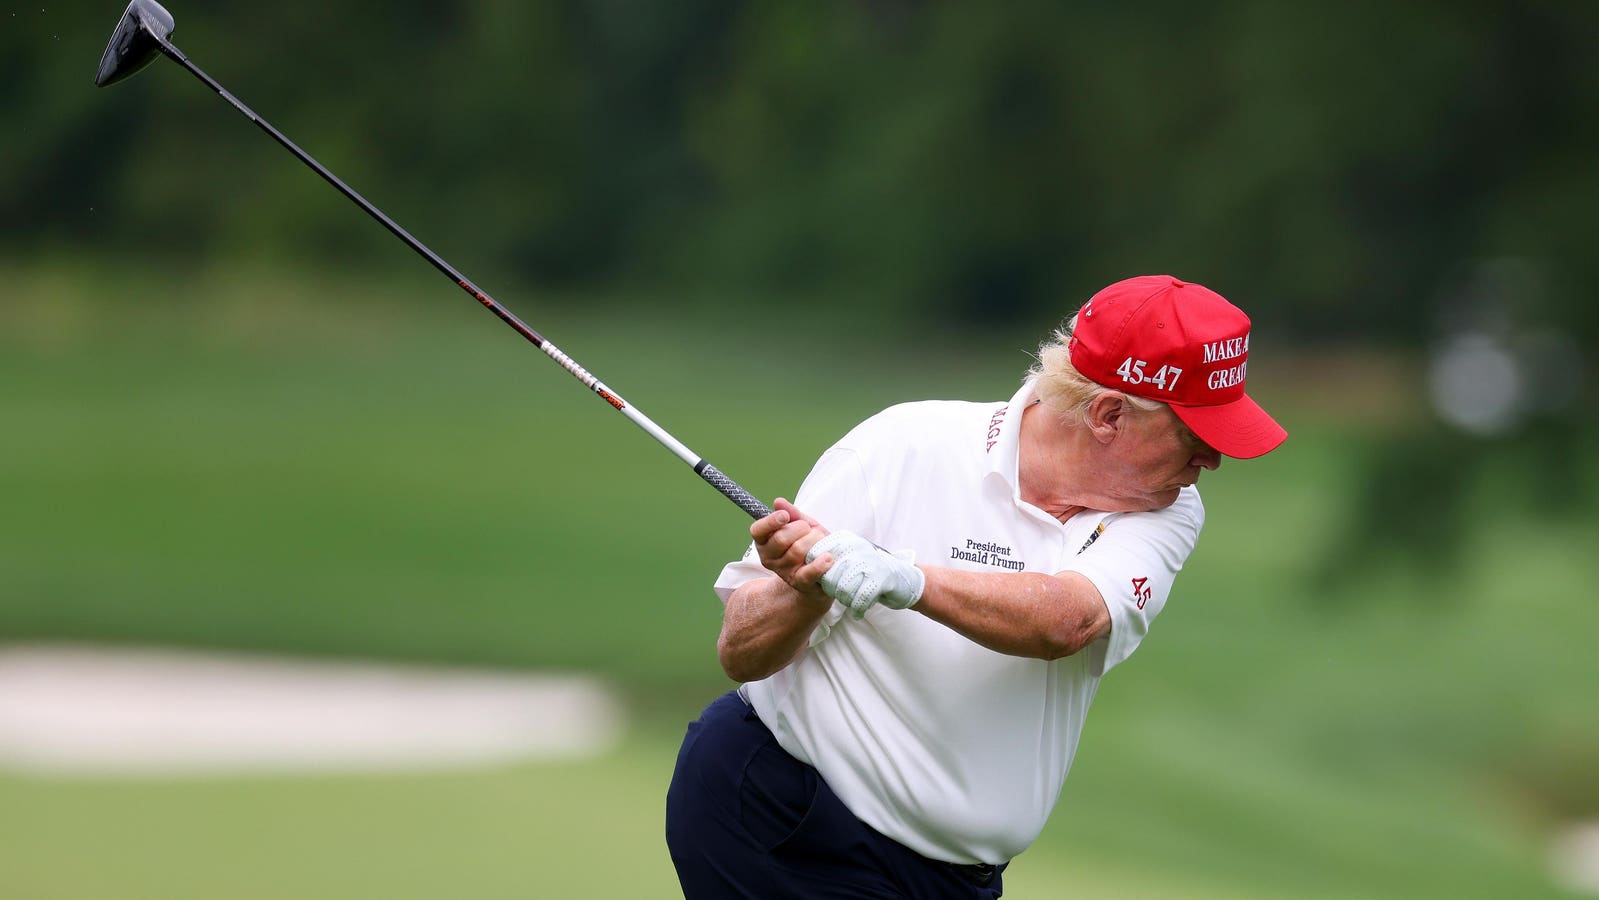 Biden Campaign Dismisses Trump’s Golf Challenge As 'Weird Antics'